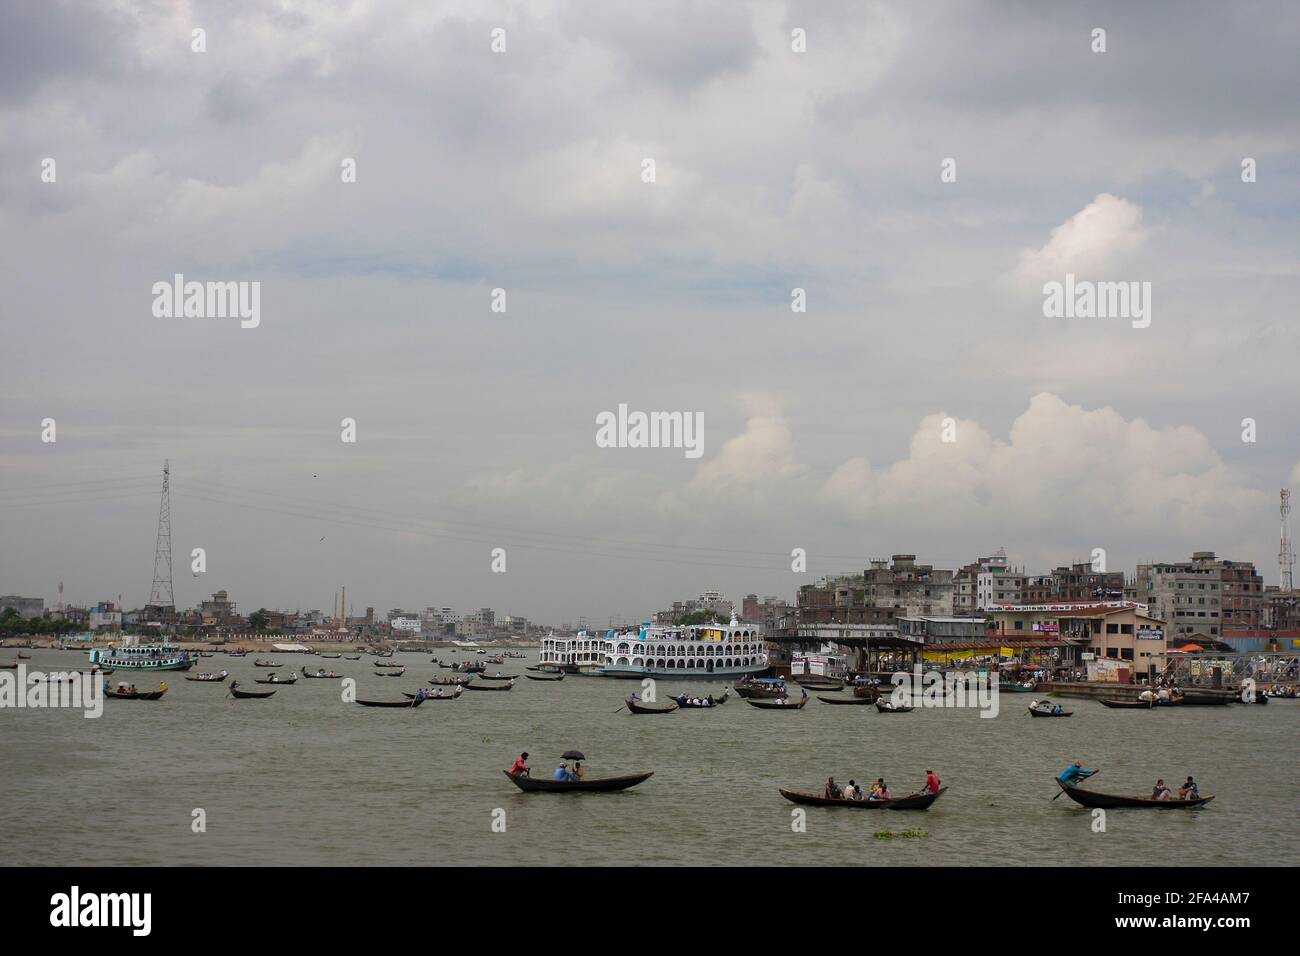 Boats on the Buriganga River, Dhaka, Bangladesh Stock Photo